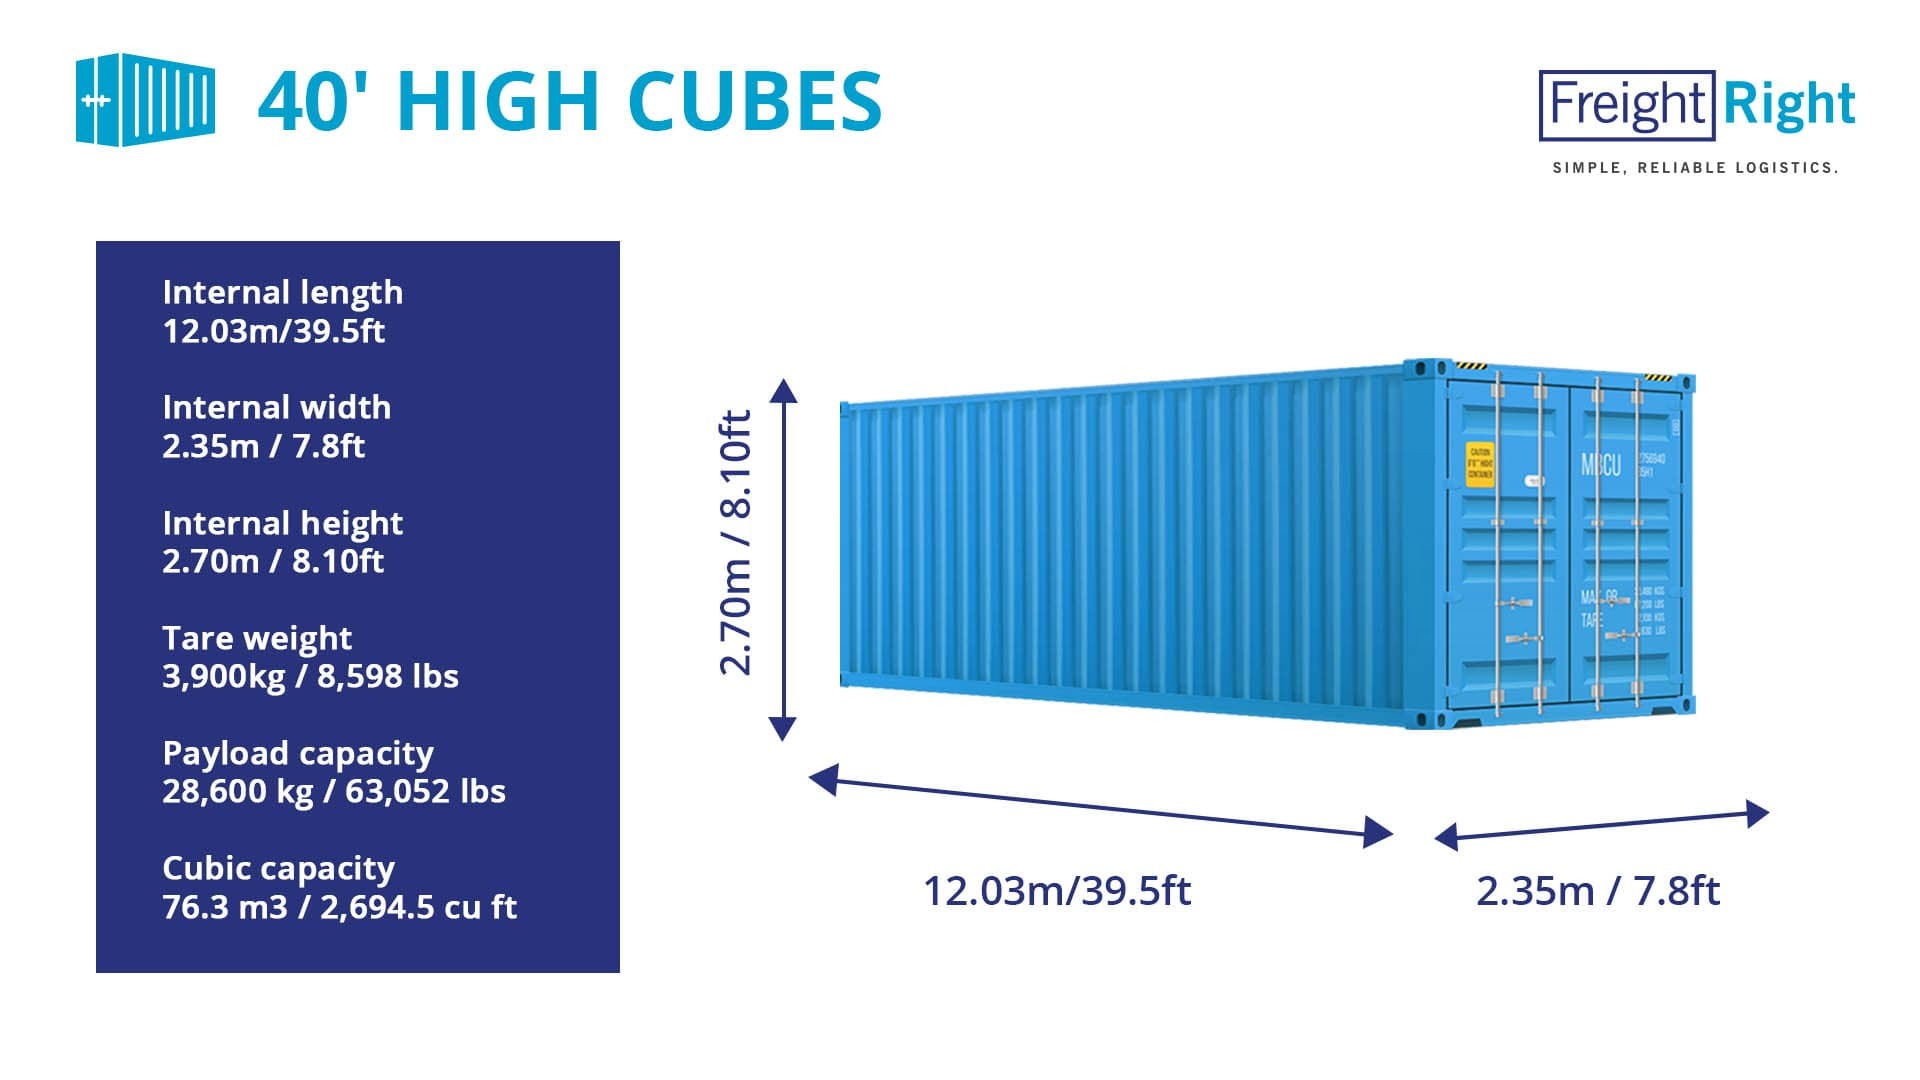 Размер морского контейнера 20 футов в метрах. Контейнер 40 HC/hq (High Cube). Контейнер 40 фут Хай Кьюб размер. Габариты 40 фут контейнера High Cube. Размеры морского контейнера 40 футов High Cube.